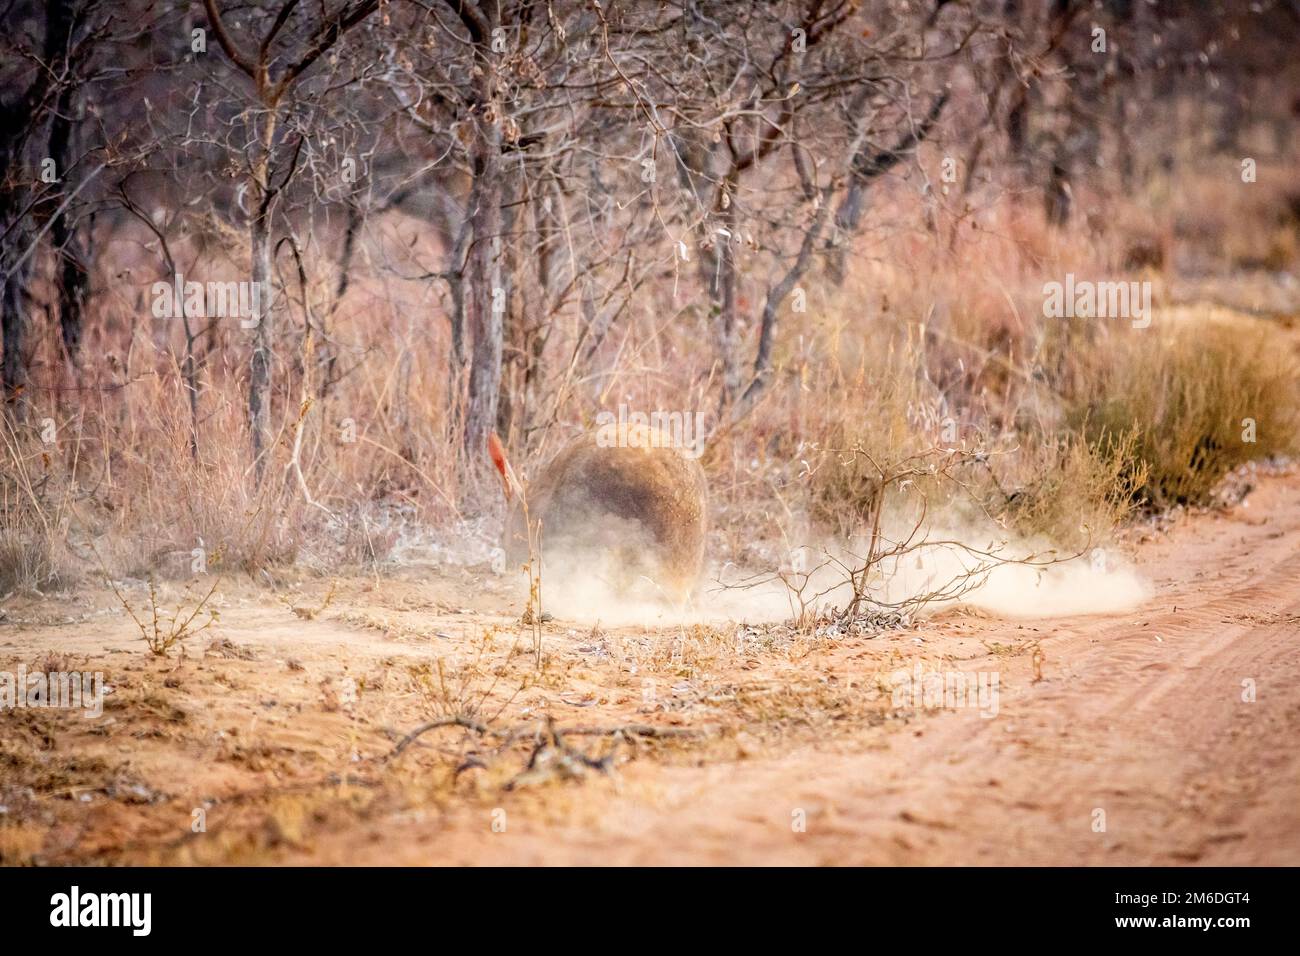 Aardvark-Futtersuche nach Ameisen im Busch. Stockfoto